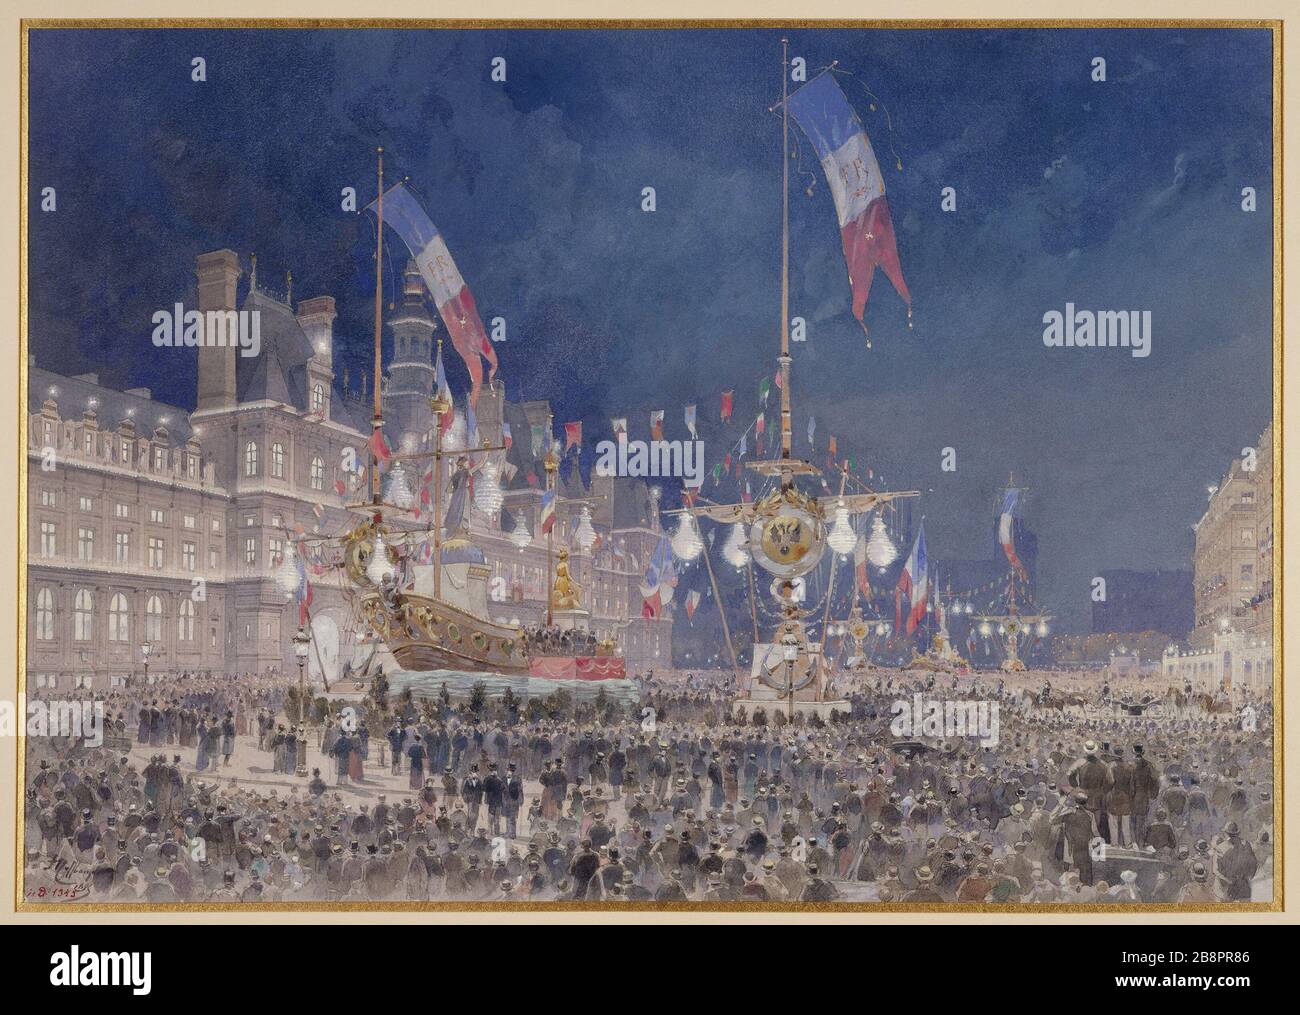 FRANCO-RUSSIAN FESTIVAL - LIGHTS OF CITY HALL Théodore Hoffbauer (1839-1922). 'Fêtes franco-russes : illumination de l'Hôtel de Ville, 1893'. Paris, musée Carnavalet. Stock Photo